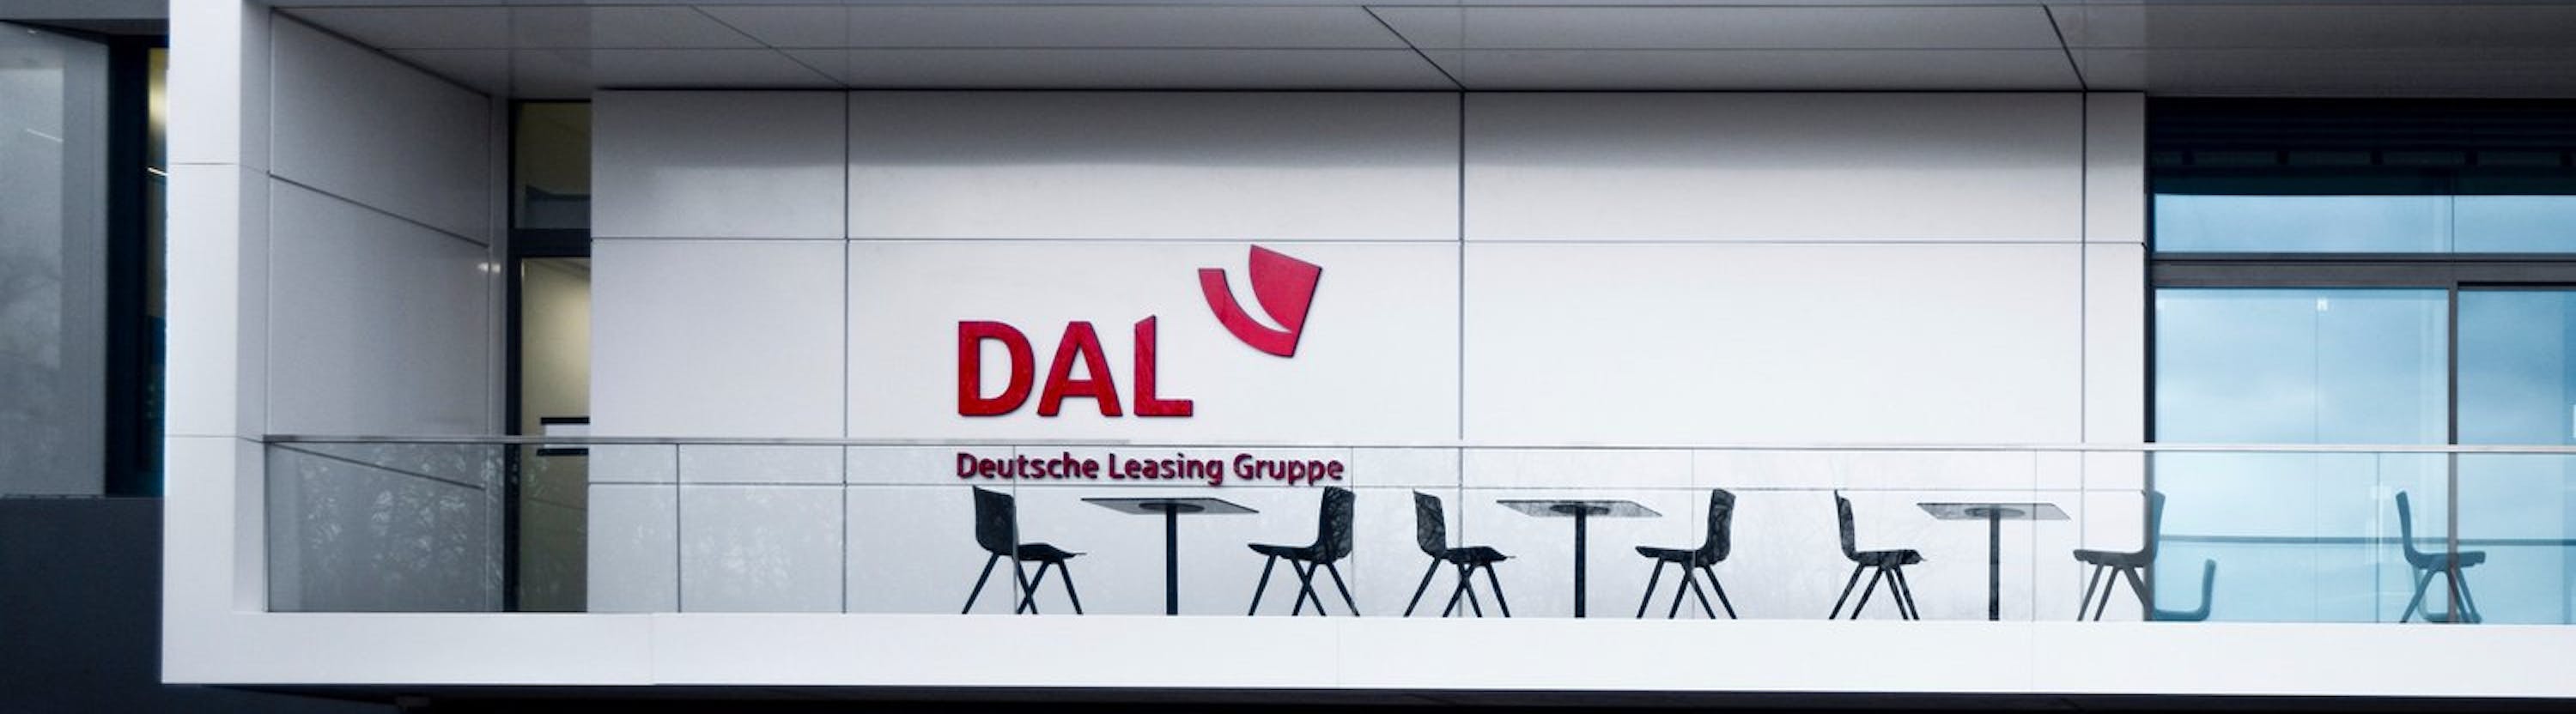 DAL Deutsche Anlagen-Leasing